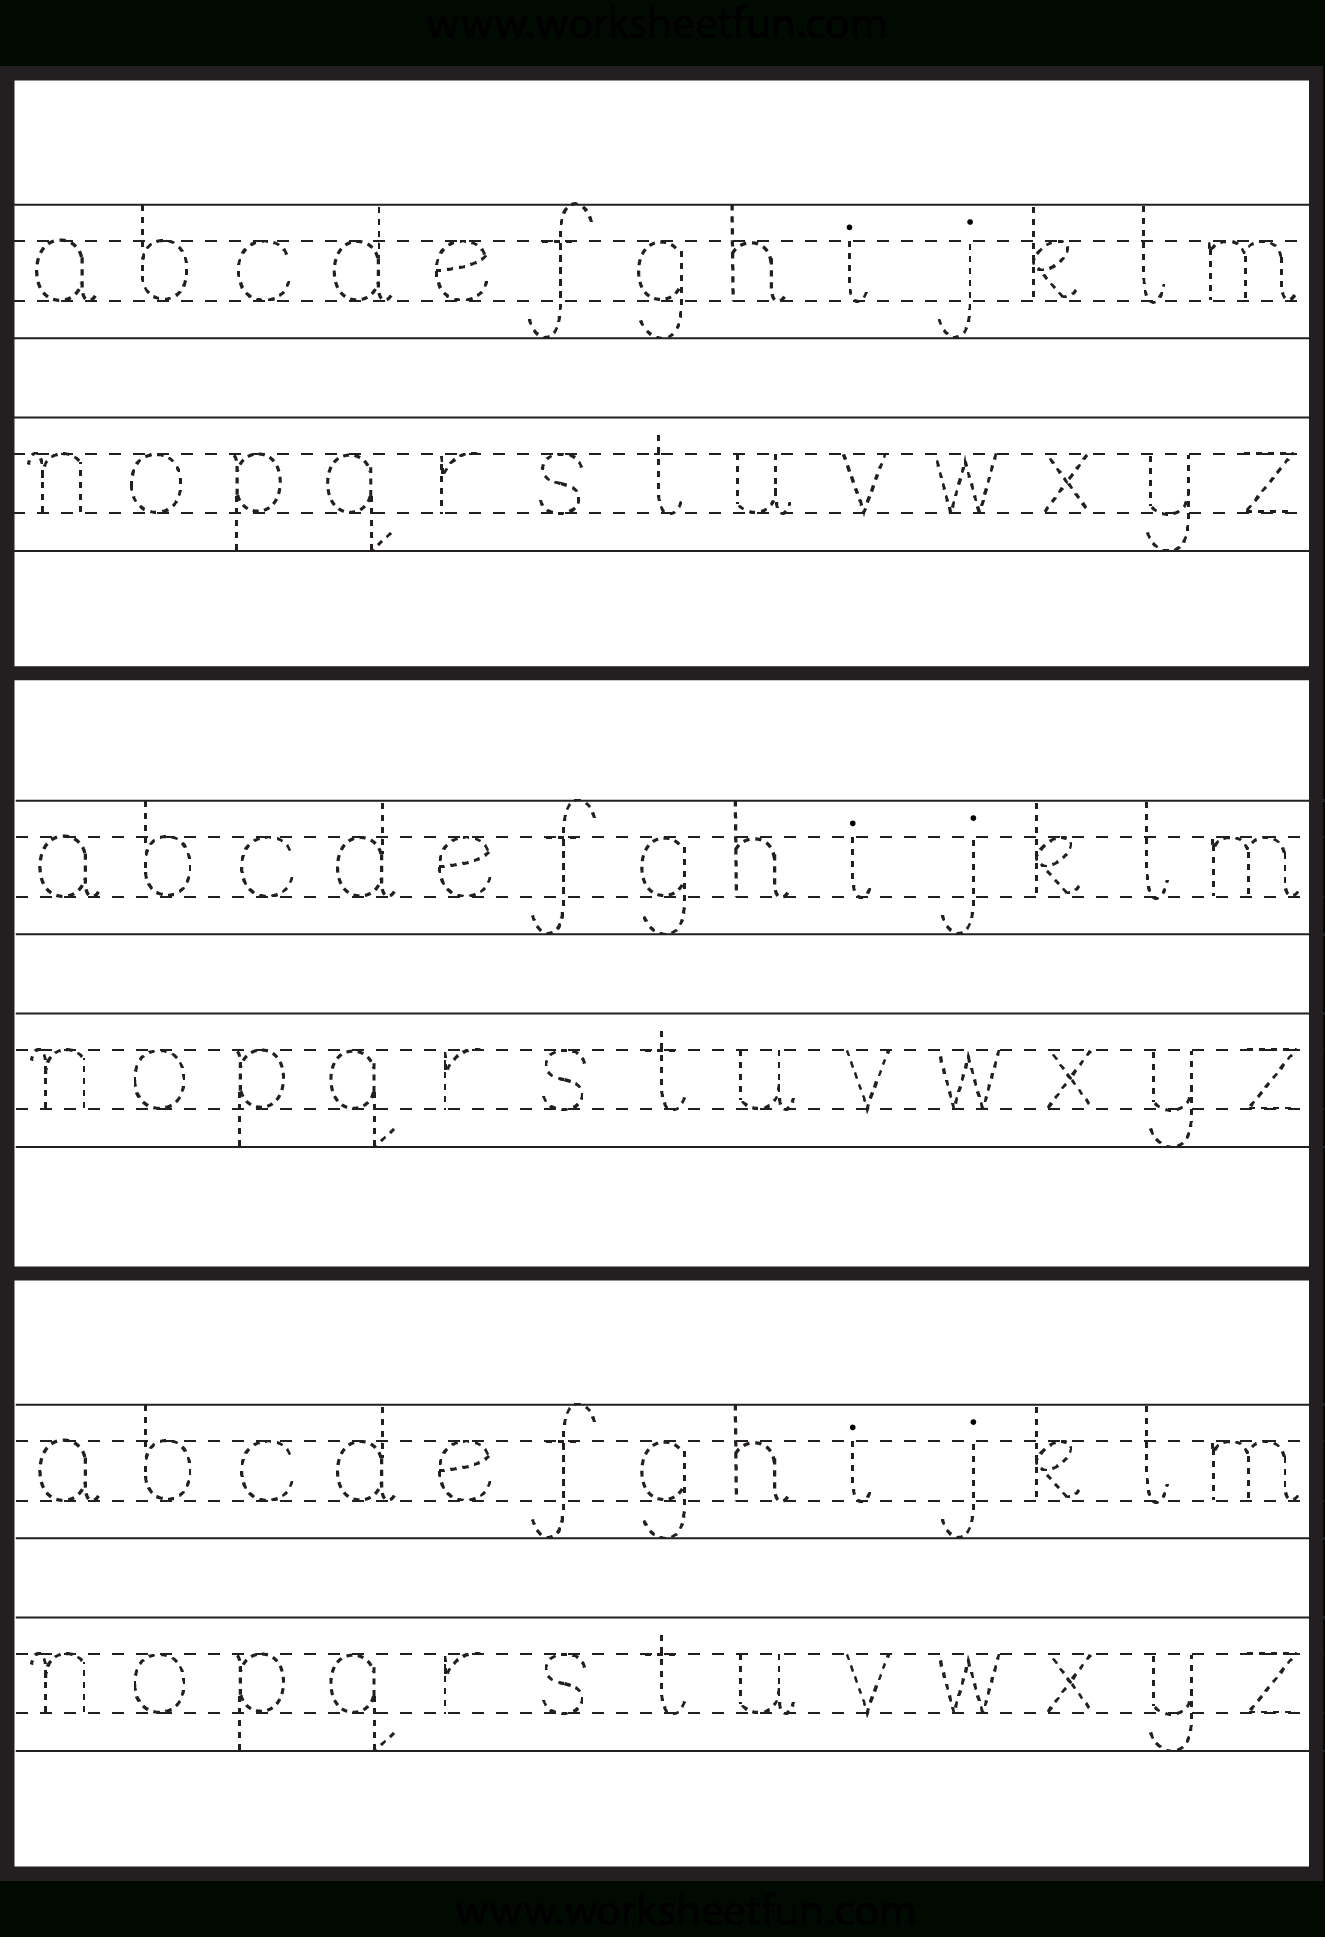 Small Letters Tracing | Tracing Letters, Tracing Worksheets regarding Tracing Small Letters Worksheets Pdf